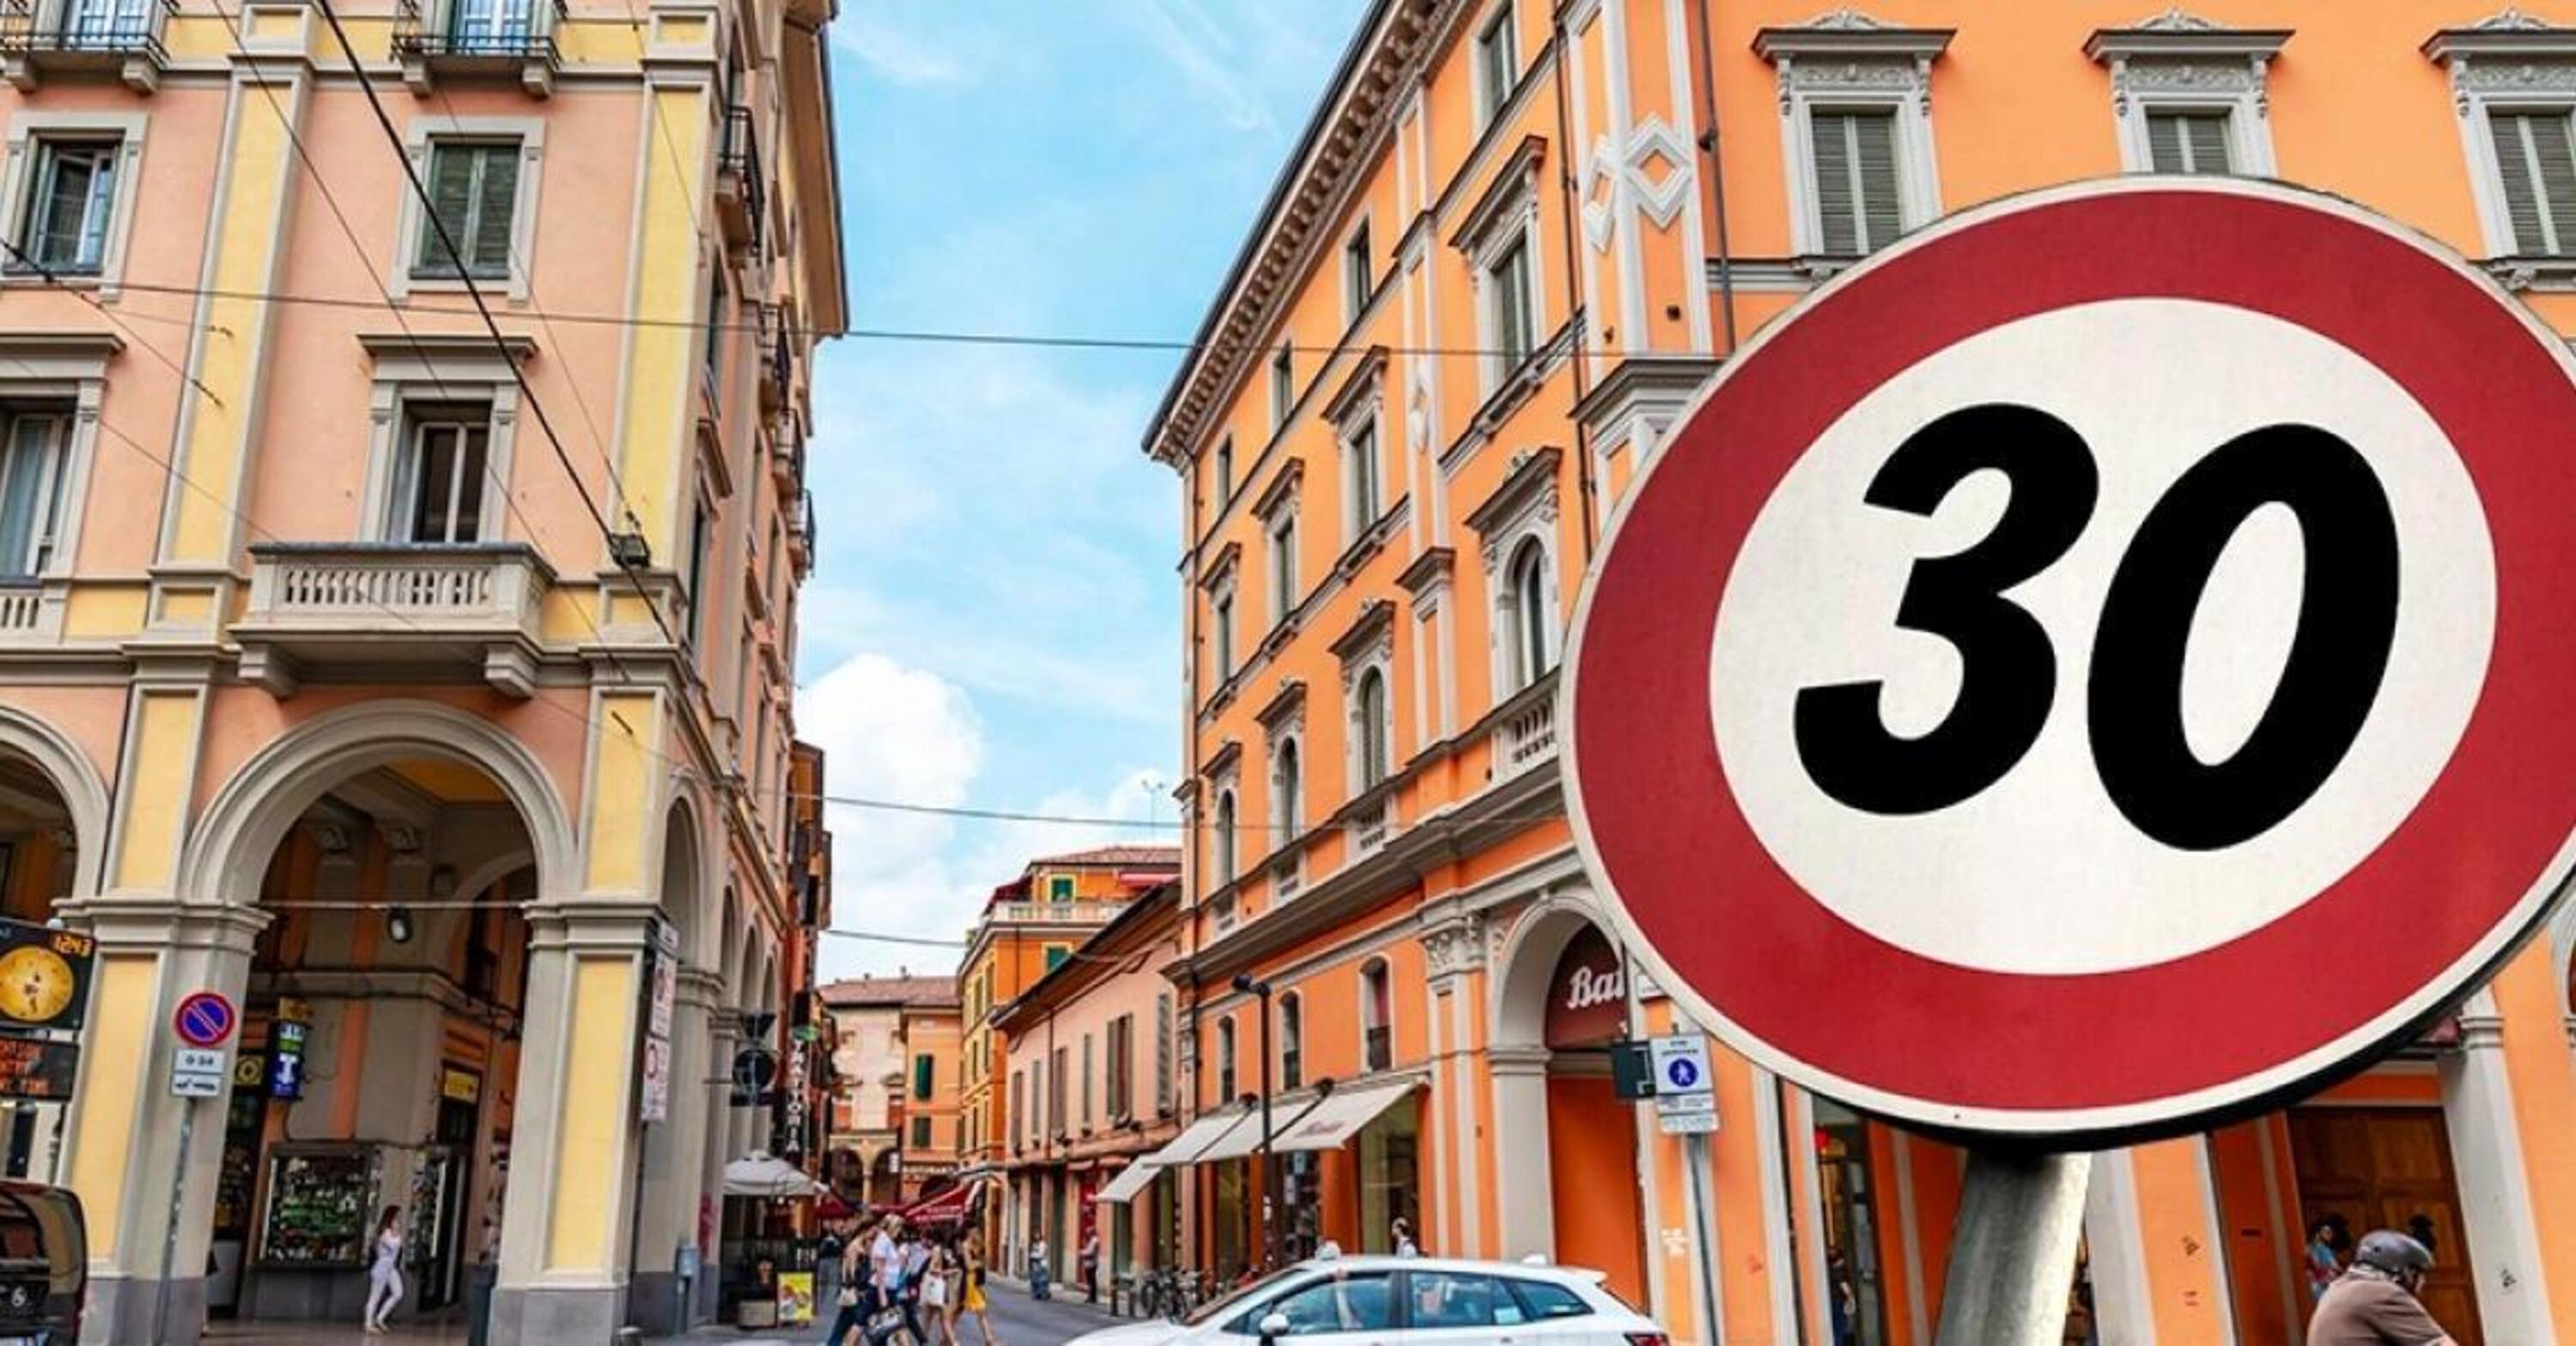 Dopo il nuovo limite di 30 km/h, -16% di incidenti a Bologna 